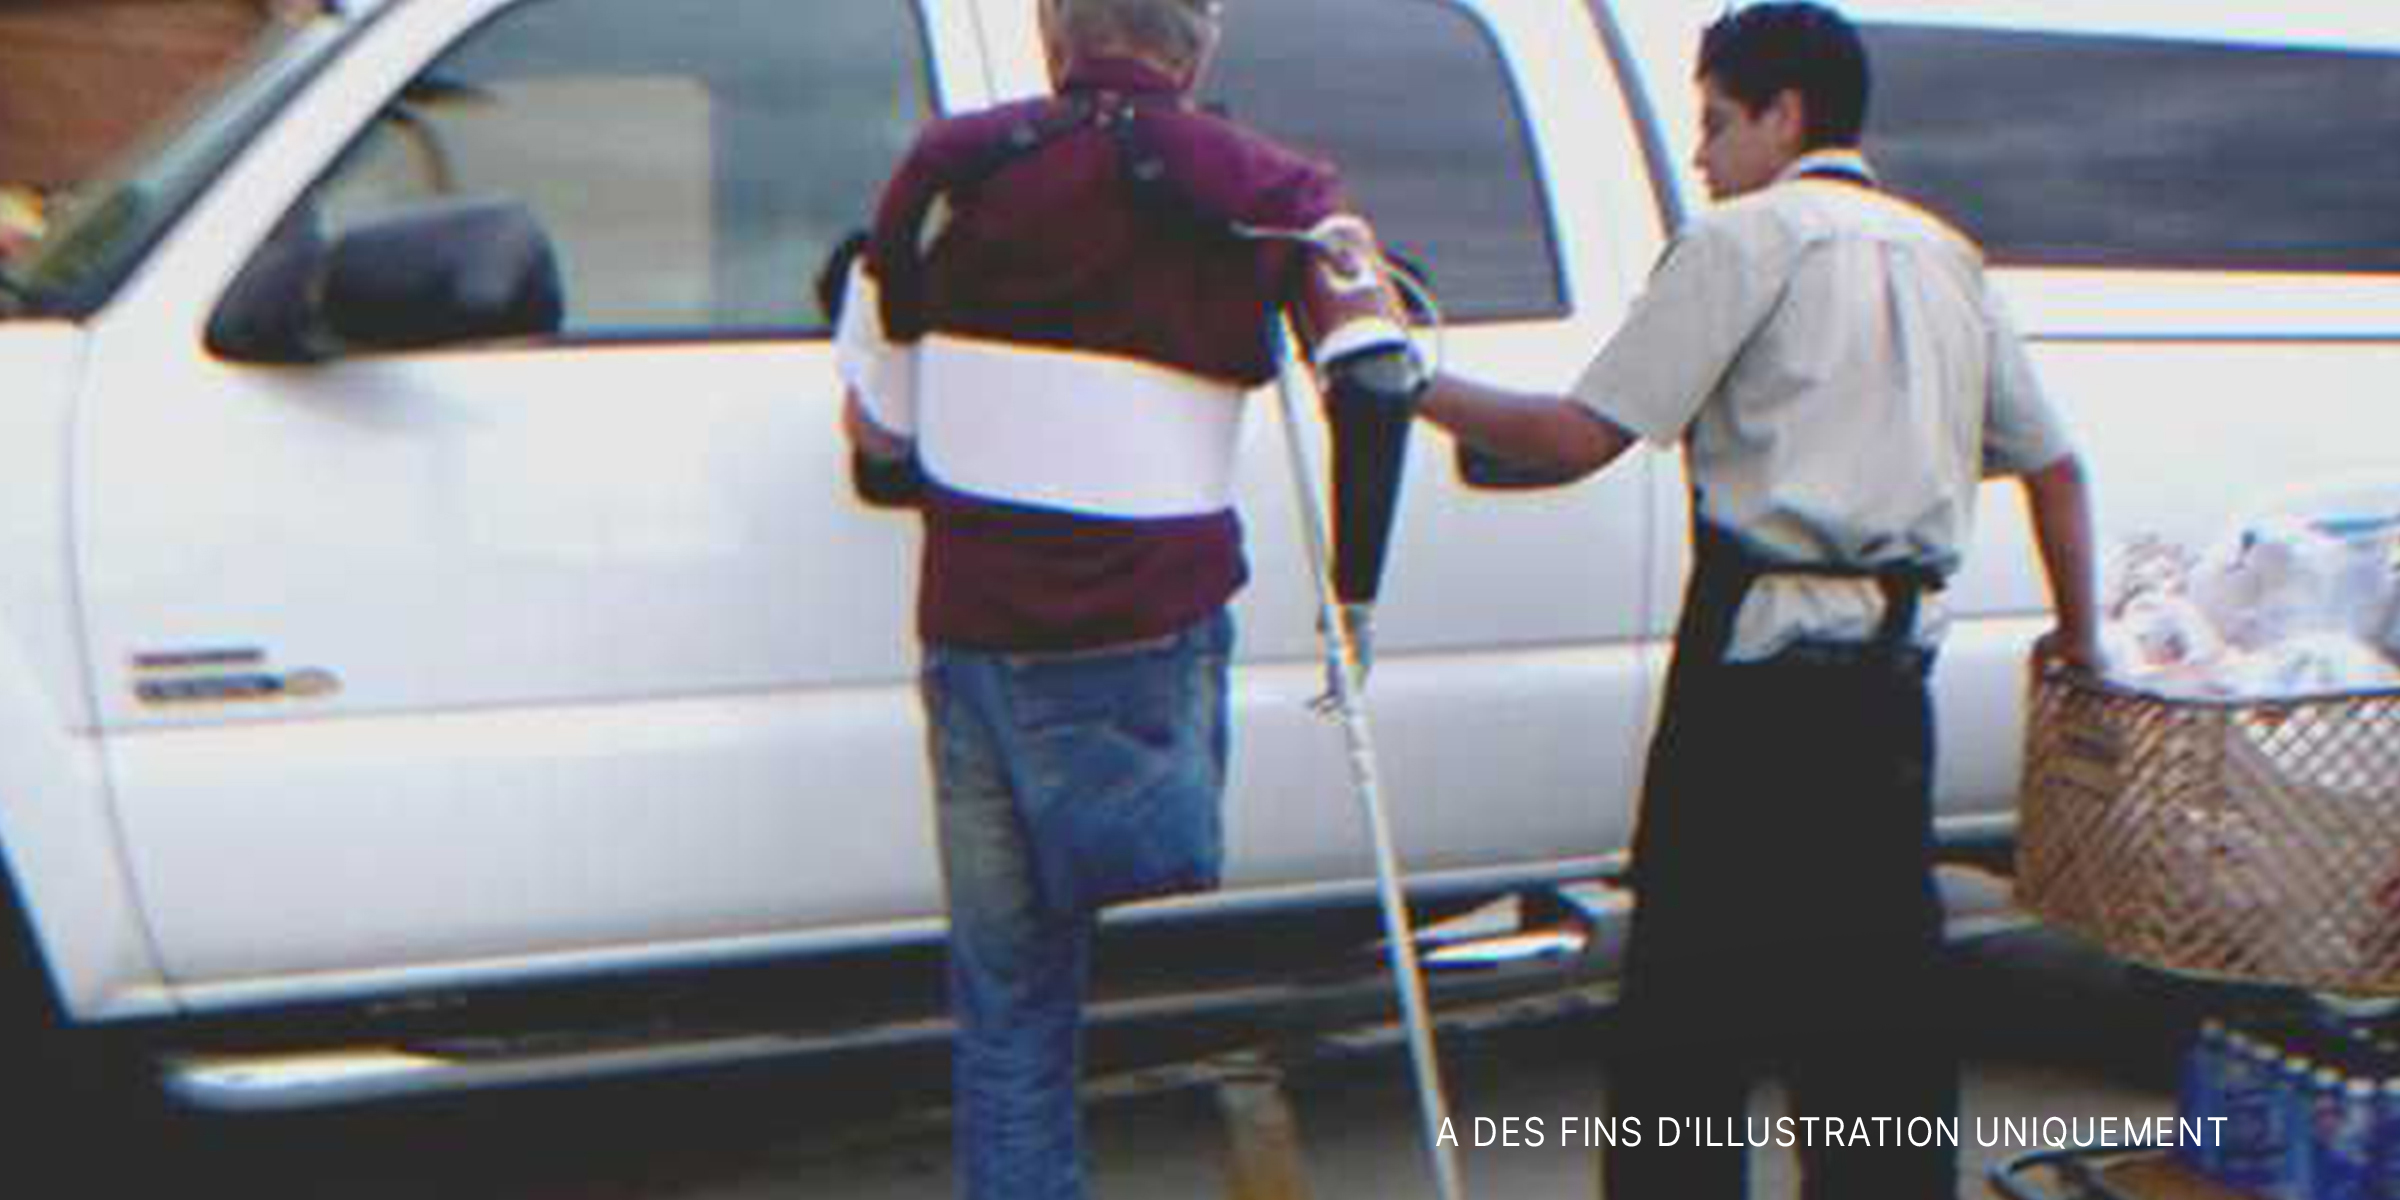 Un employé de magasin aidant un homme handicapé | Source : Flickr/Paul L Dineen (CC BY 2.0)